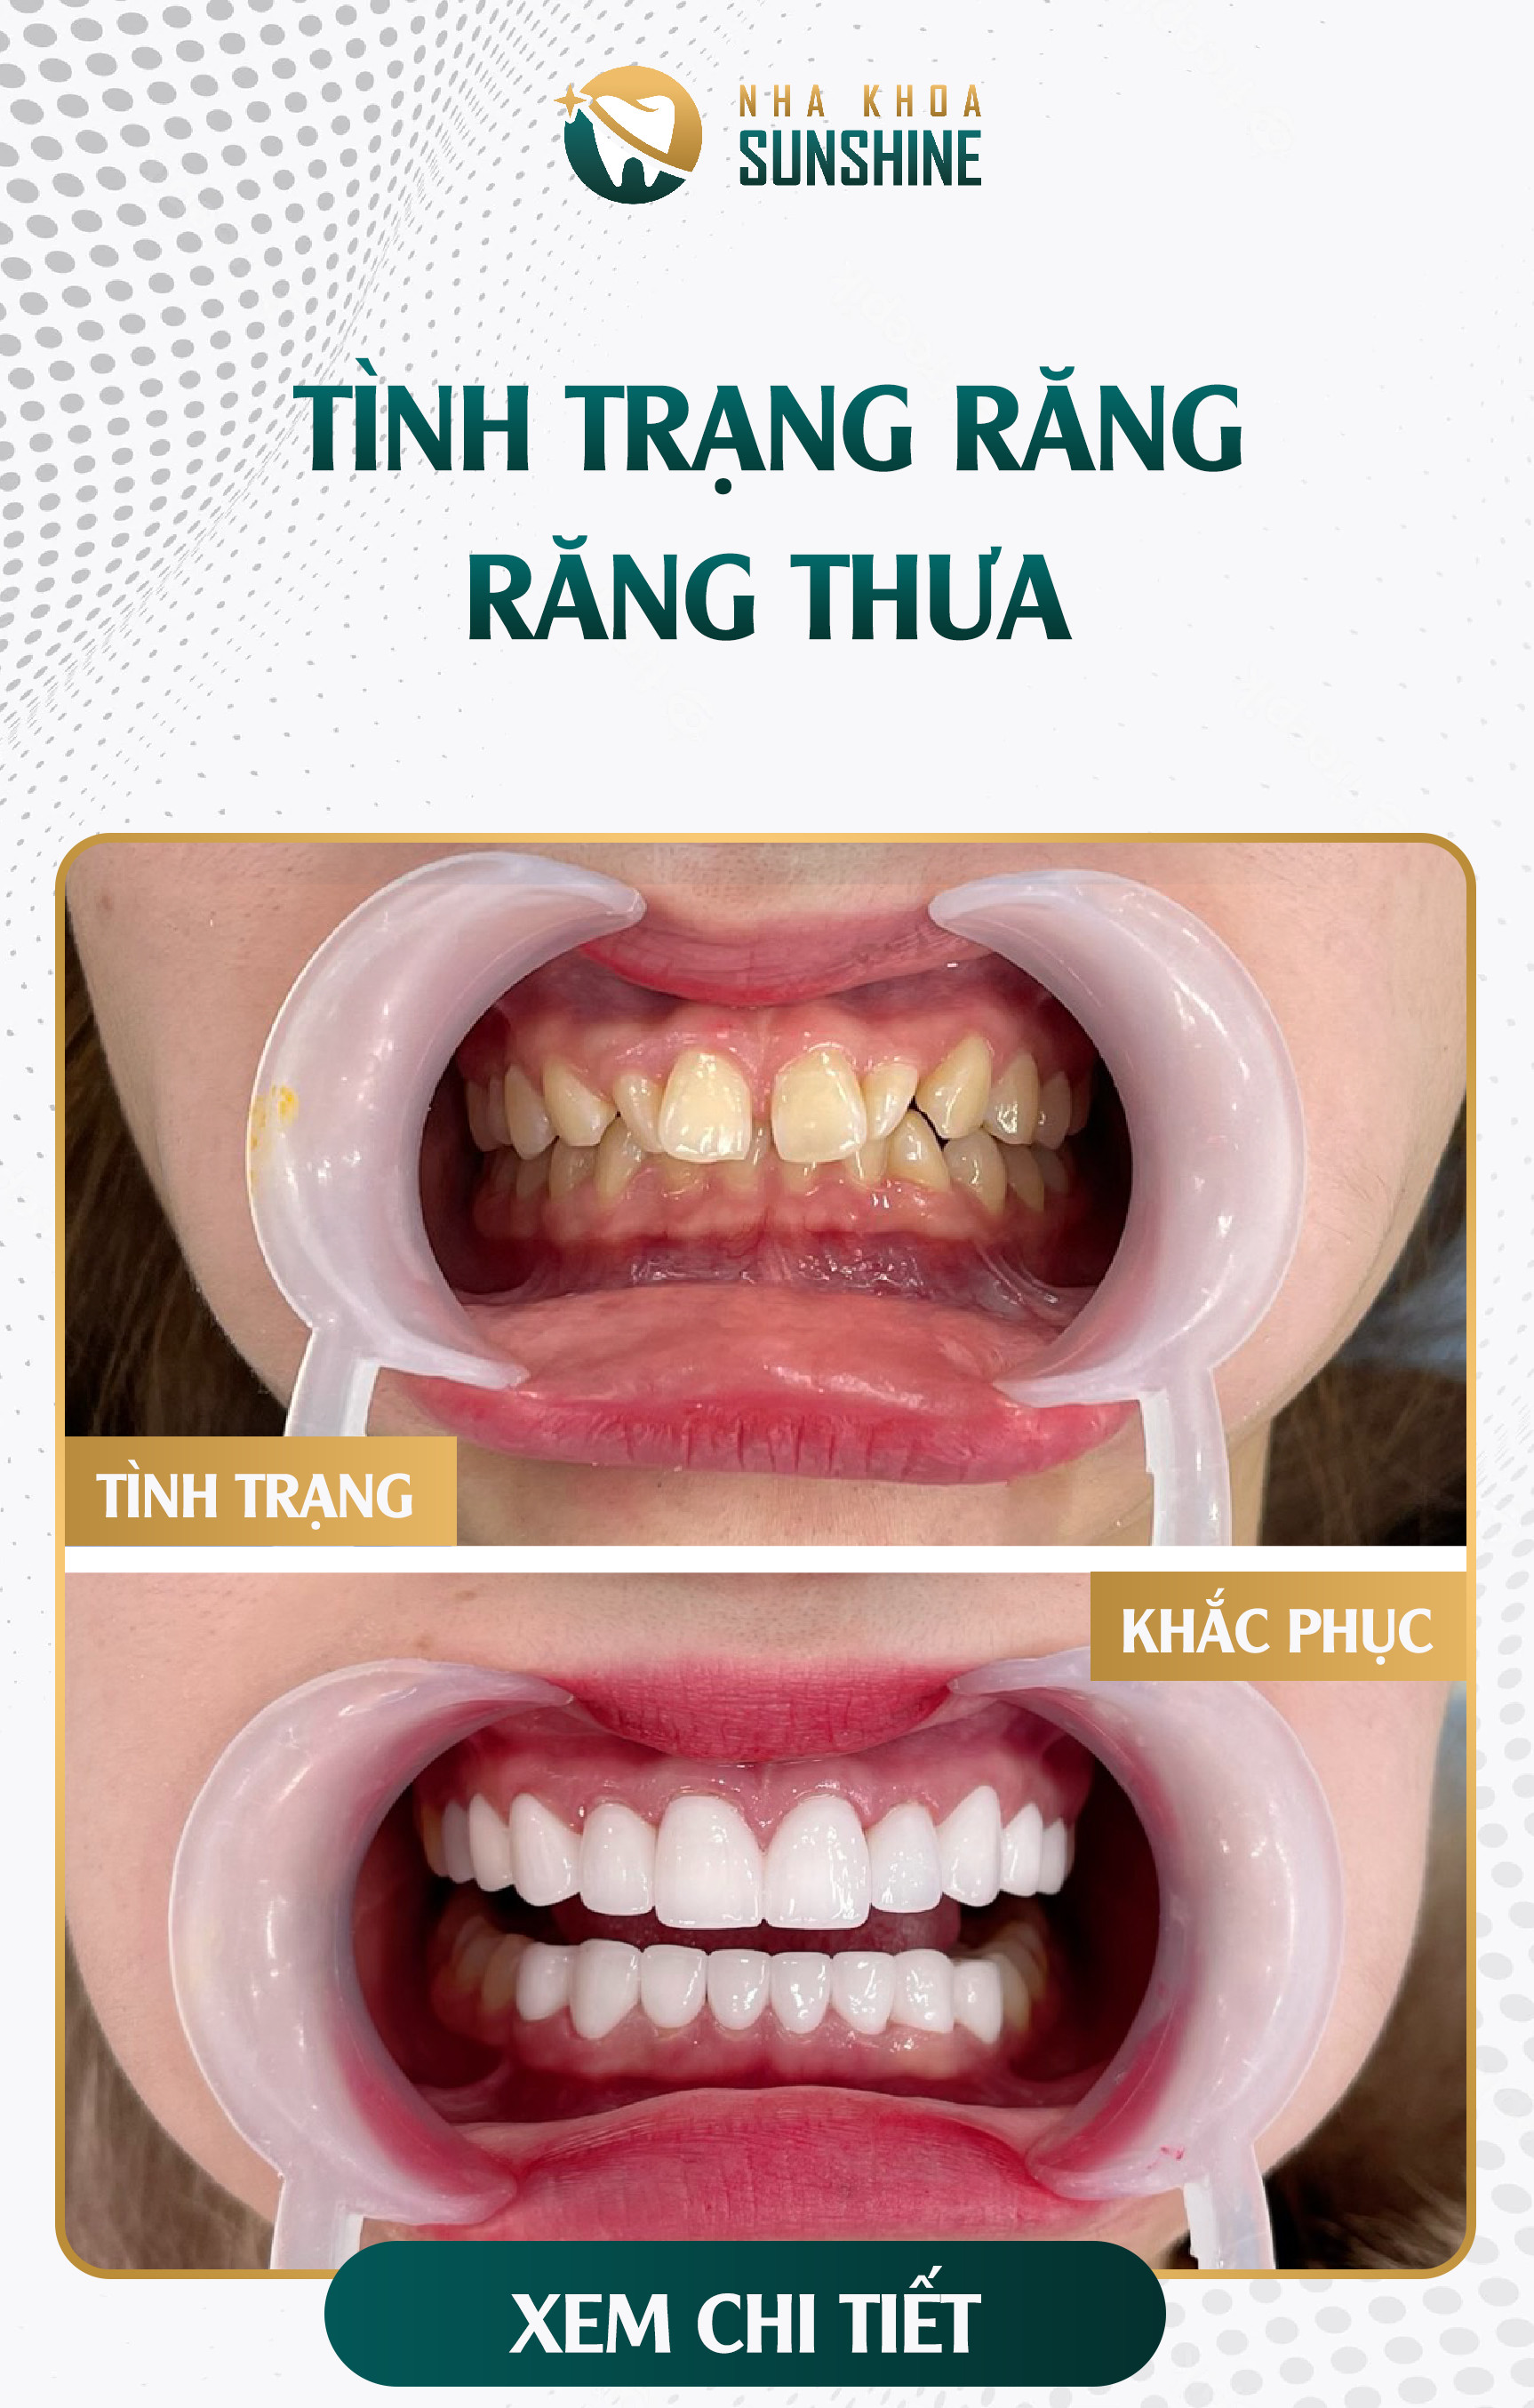 Khuyến mãi cực lớn - Bọc răng sứ giảm ngay 50% chi phí Fancy-rangthua